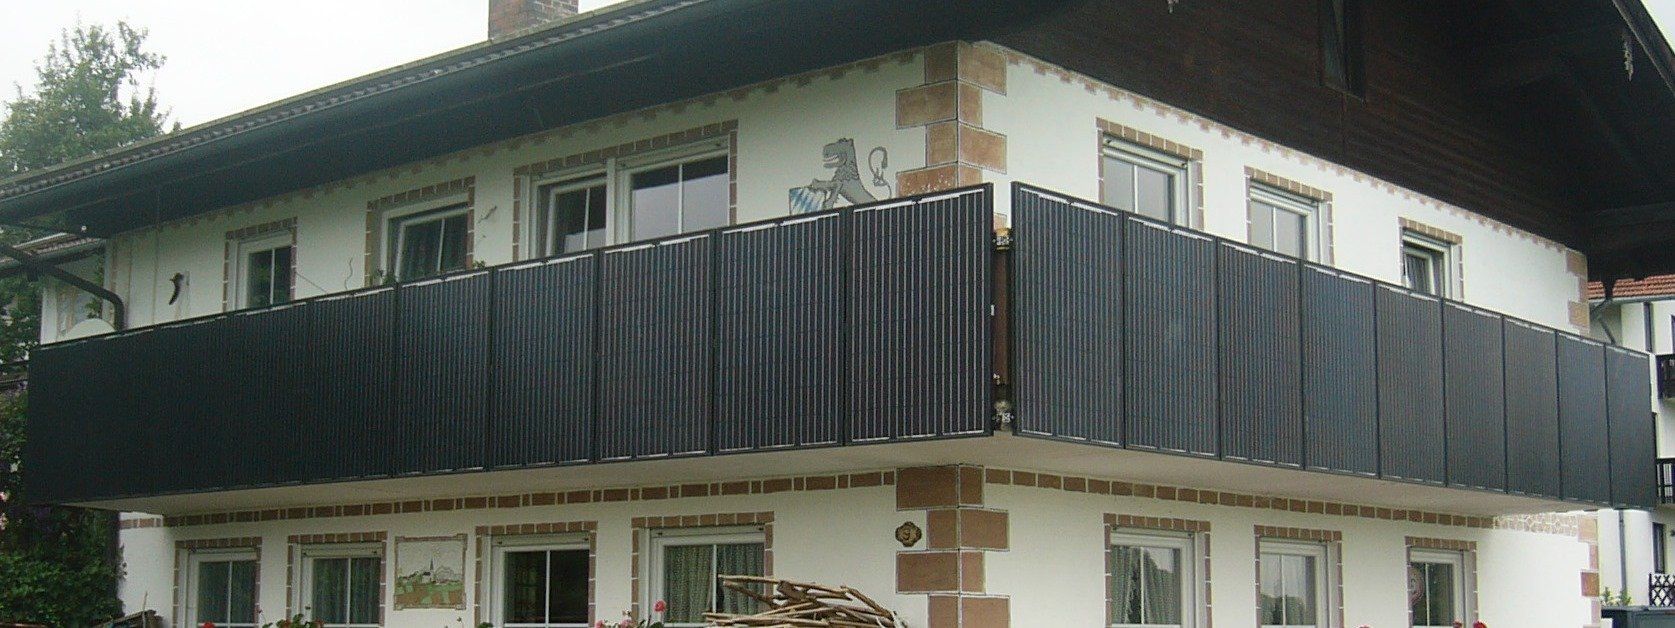 Auch der Balkon kann zur Befestigung der Photovoltaikanlage genutzt werden.